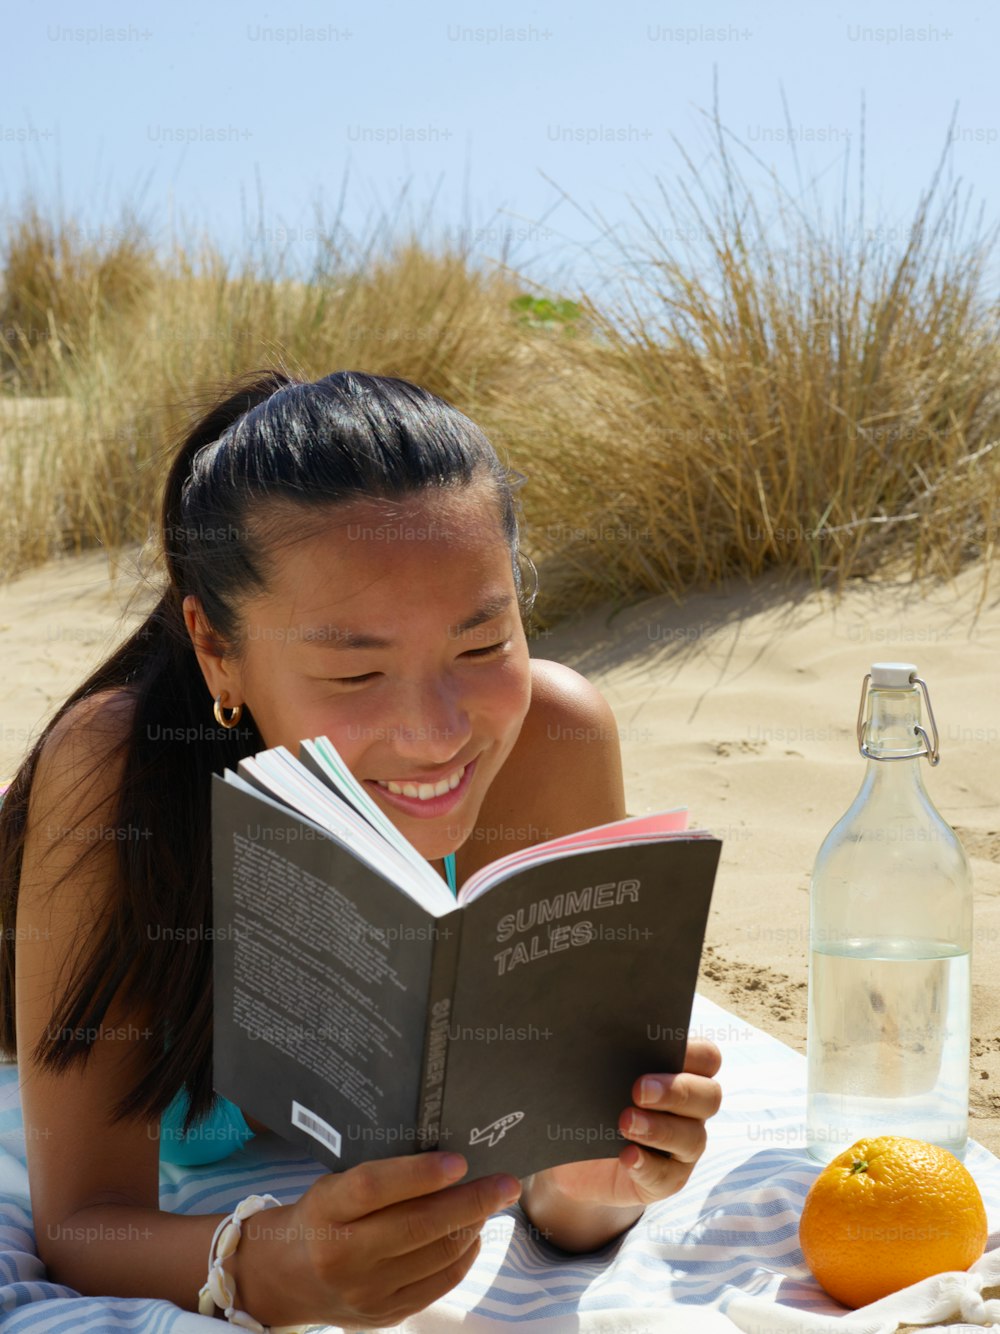 Una ragazza che legge un libro sulla spiaggia